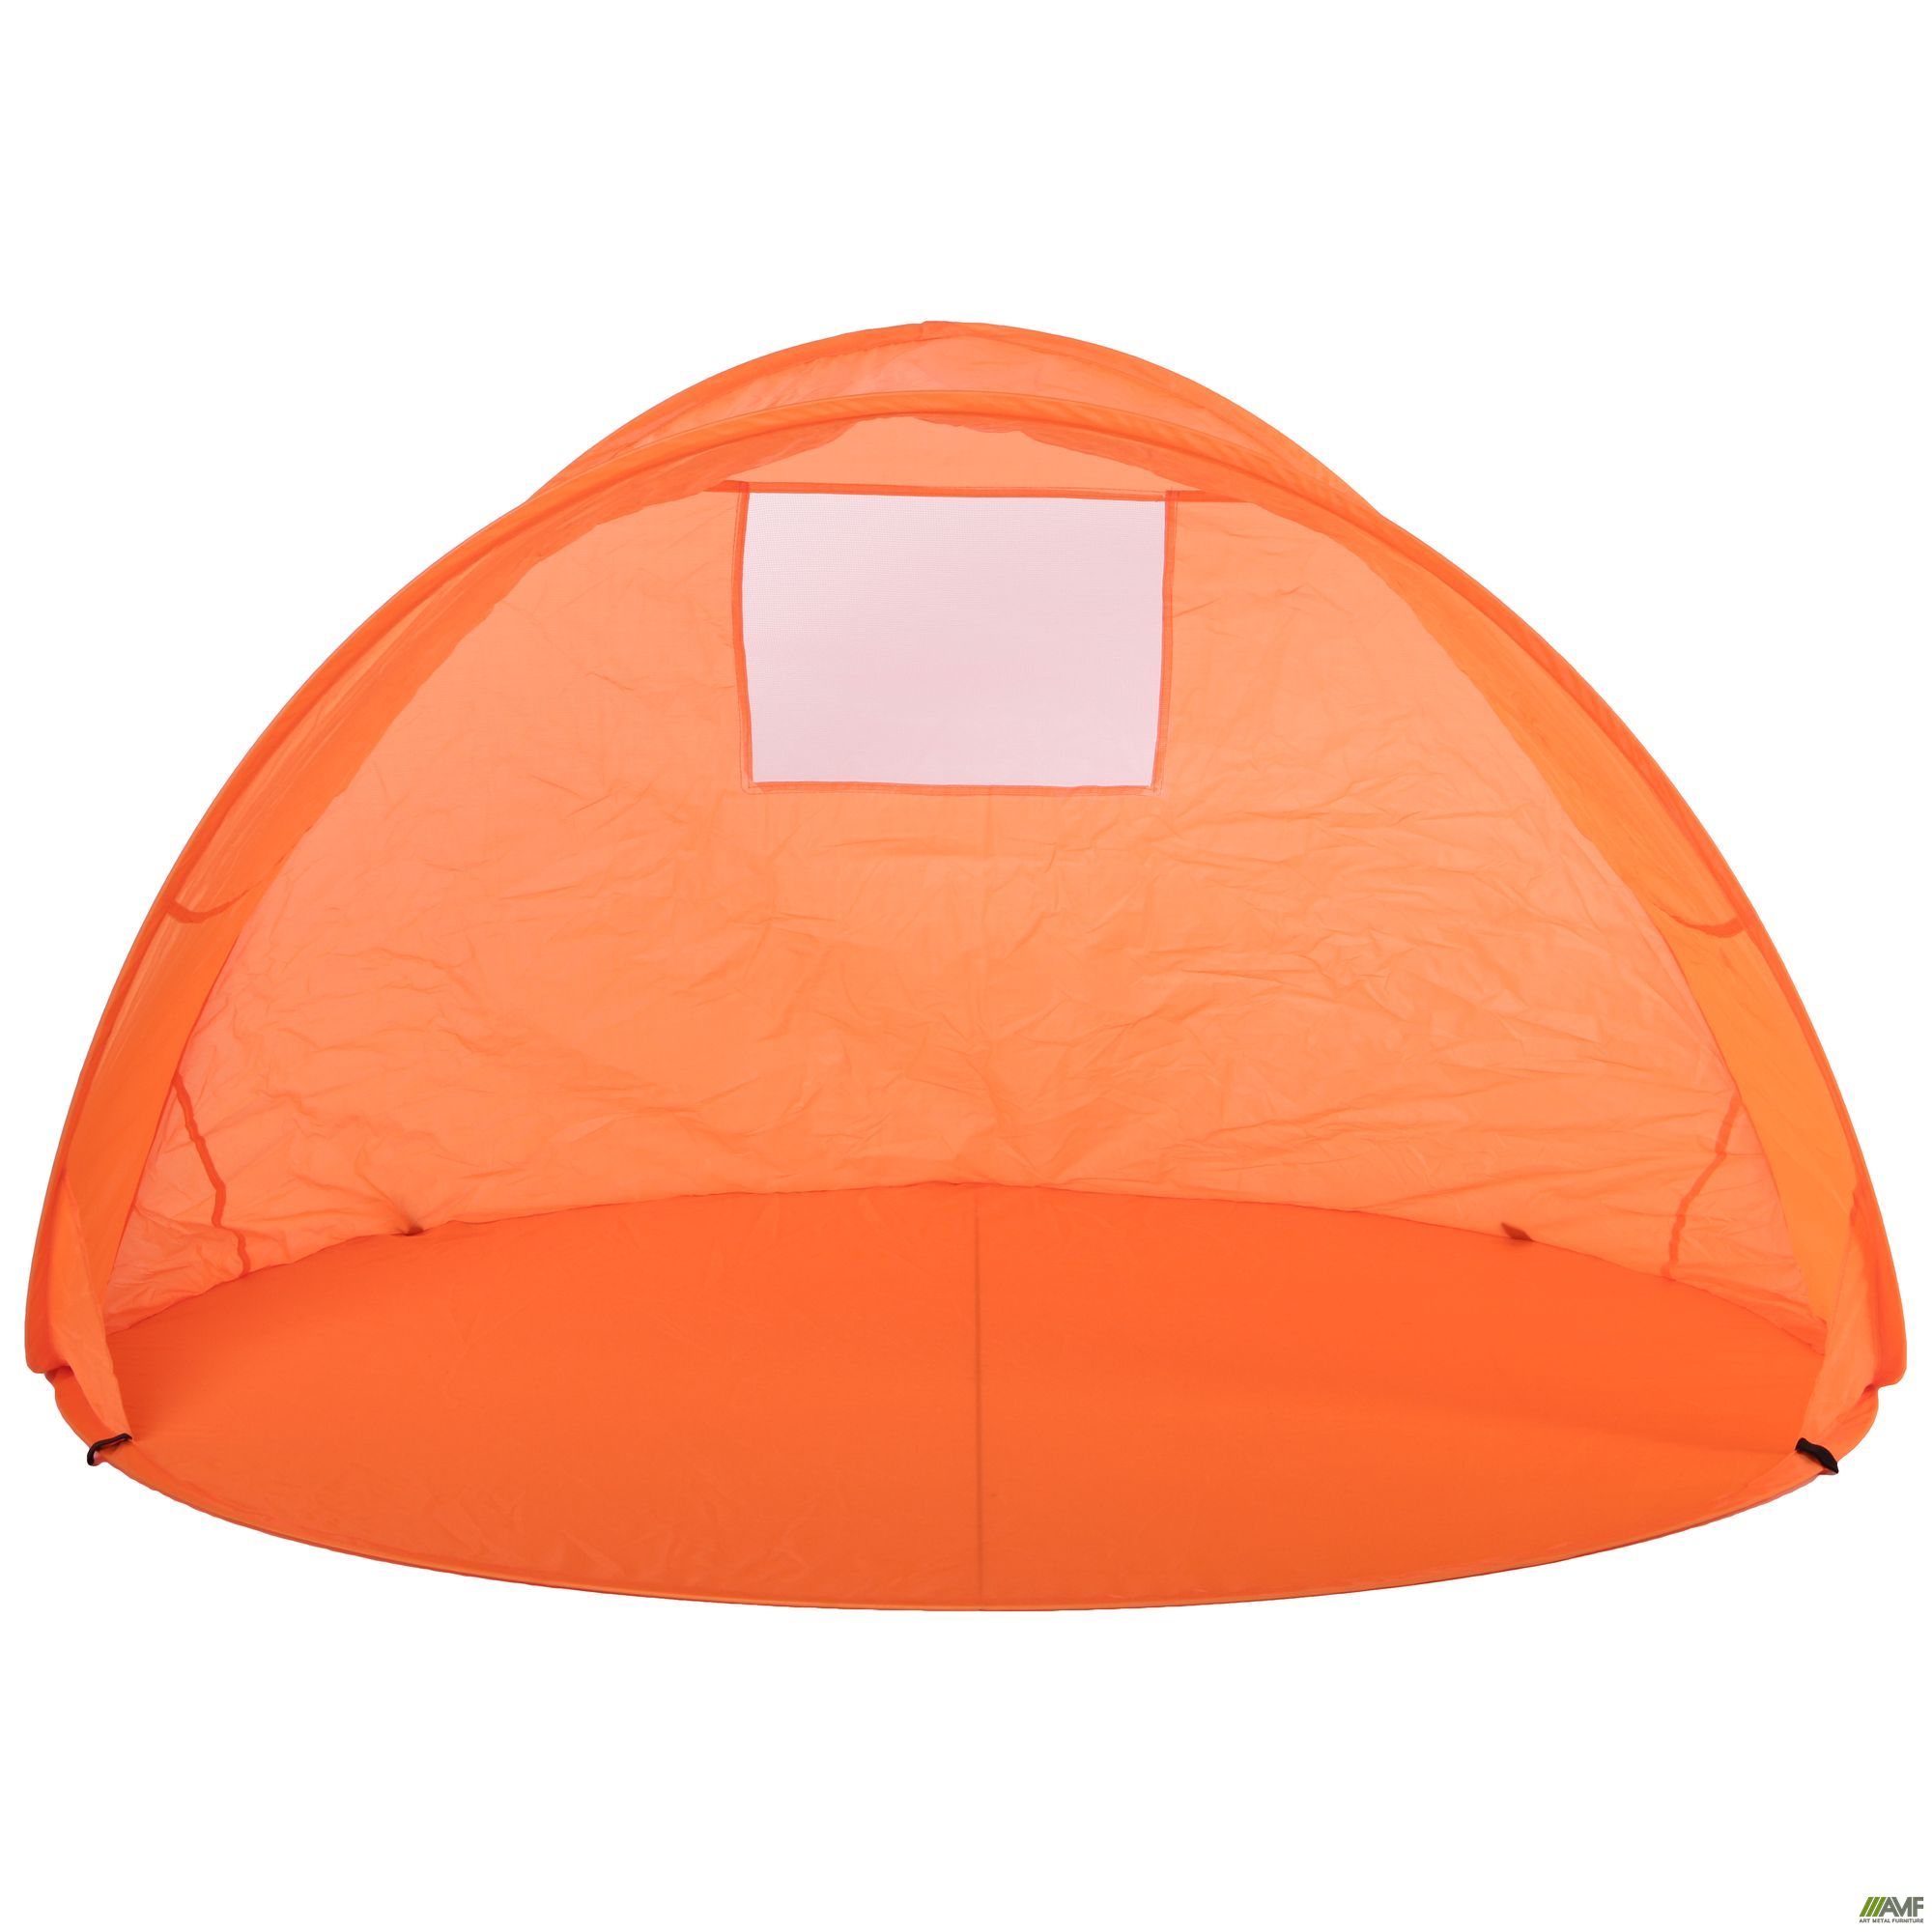 Фото 3 - Палатка-автомат Вингс оранж 